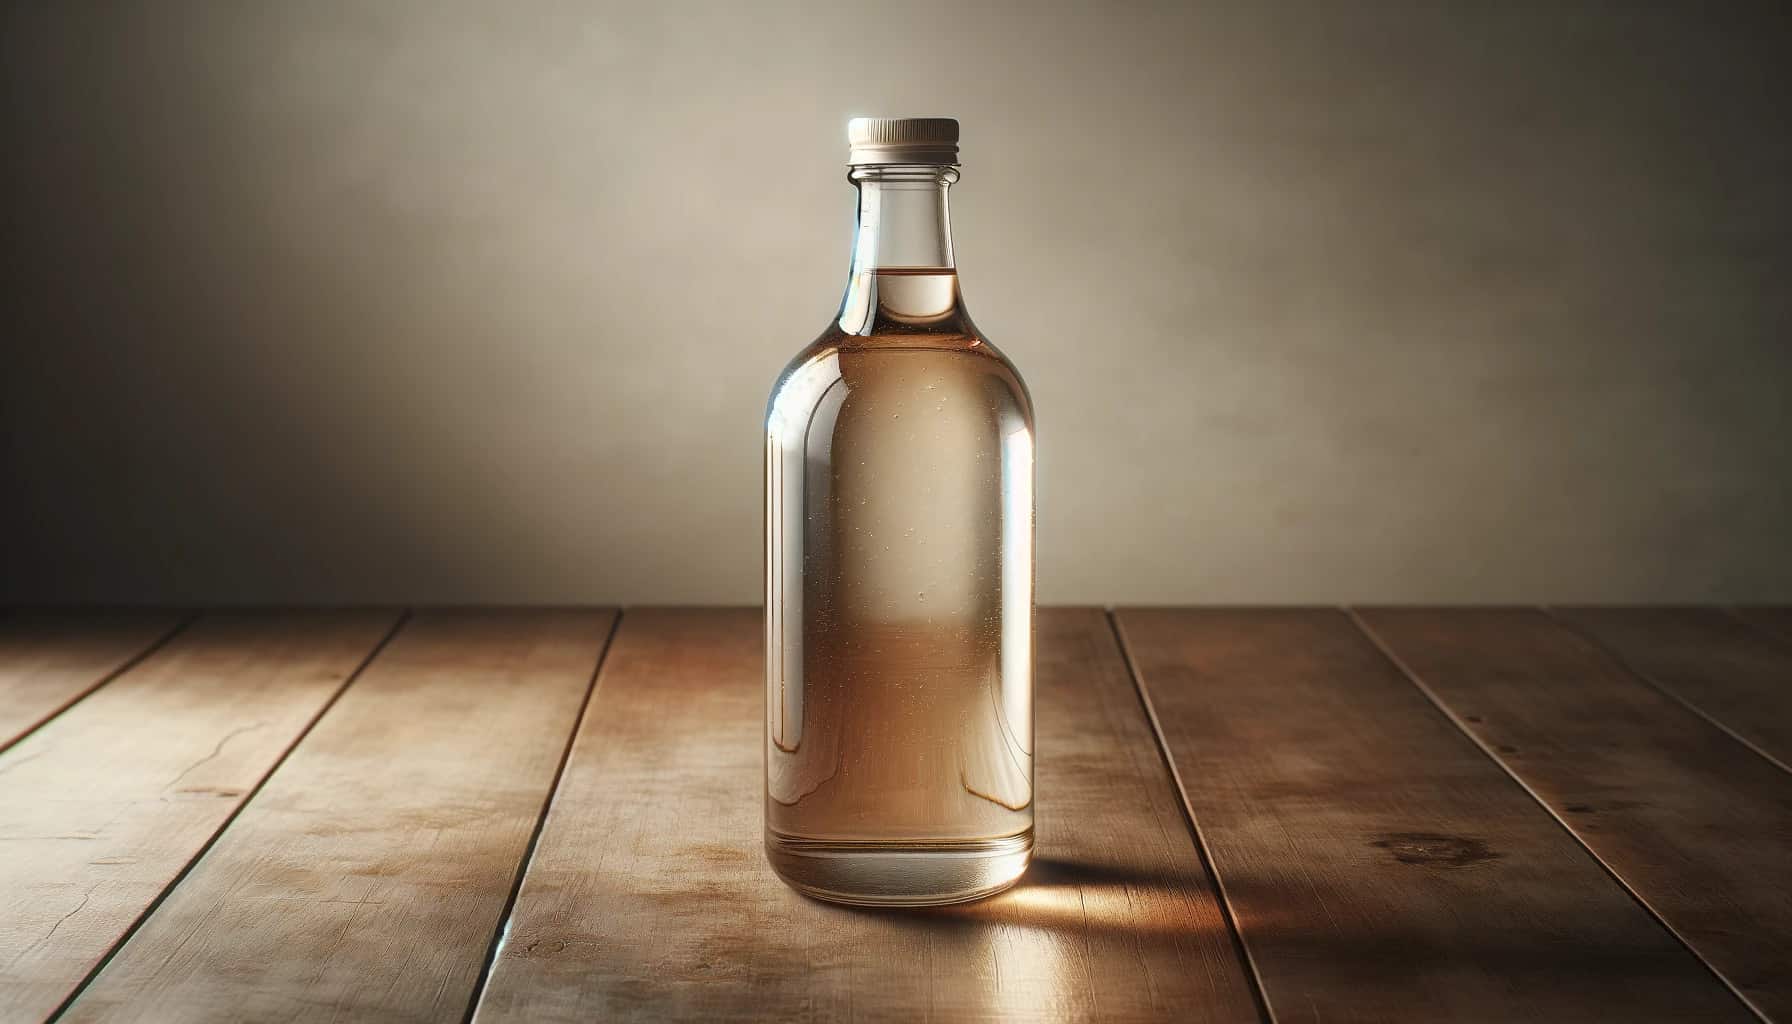 Vinegar in a clear glass bottle